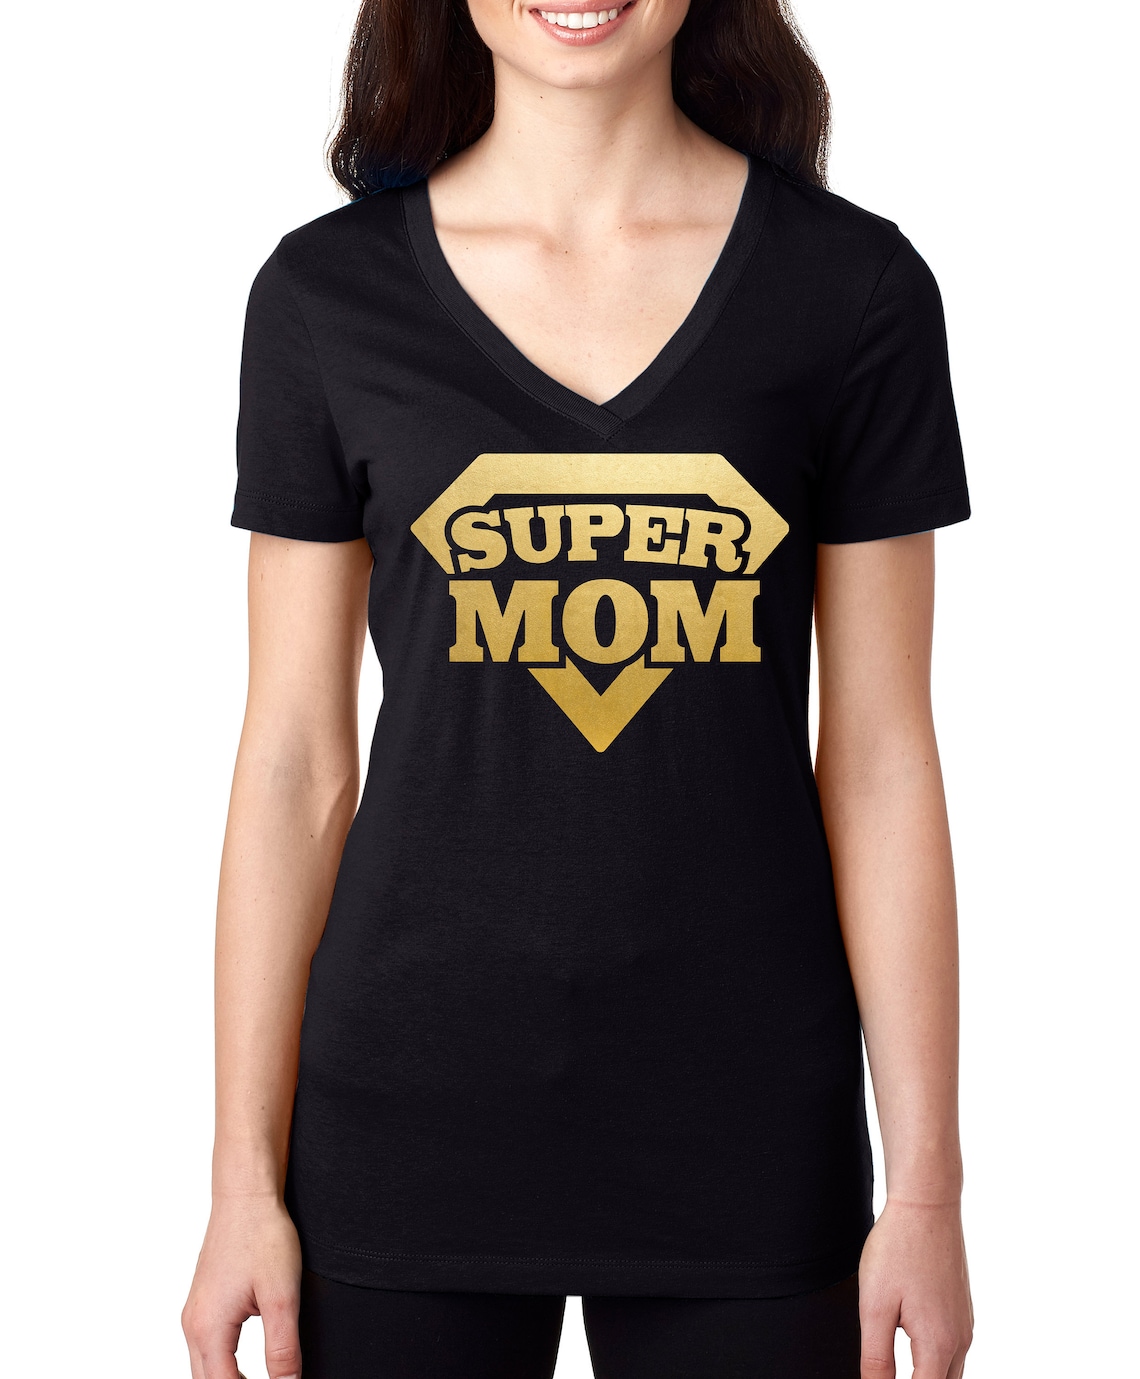 Super Mom Shirt Superhero Party Shirt Ladies Superhero | Etsy